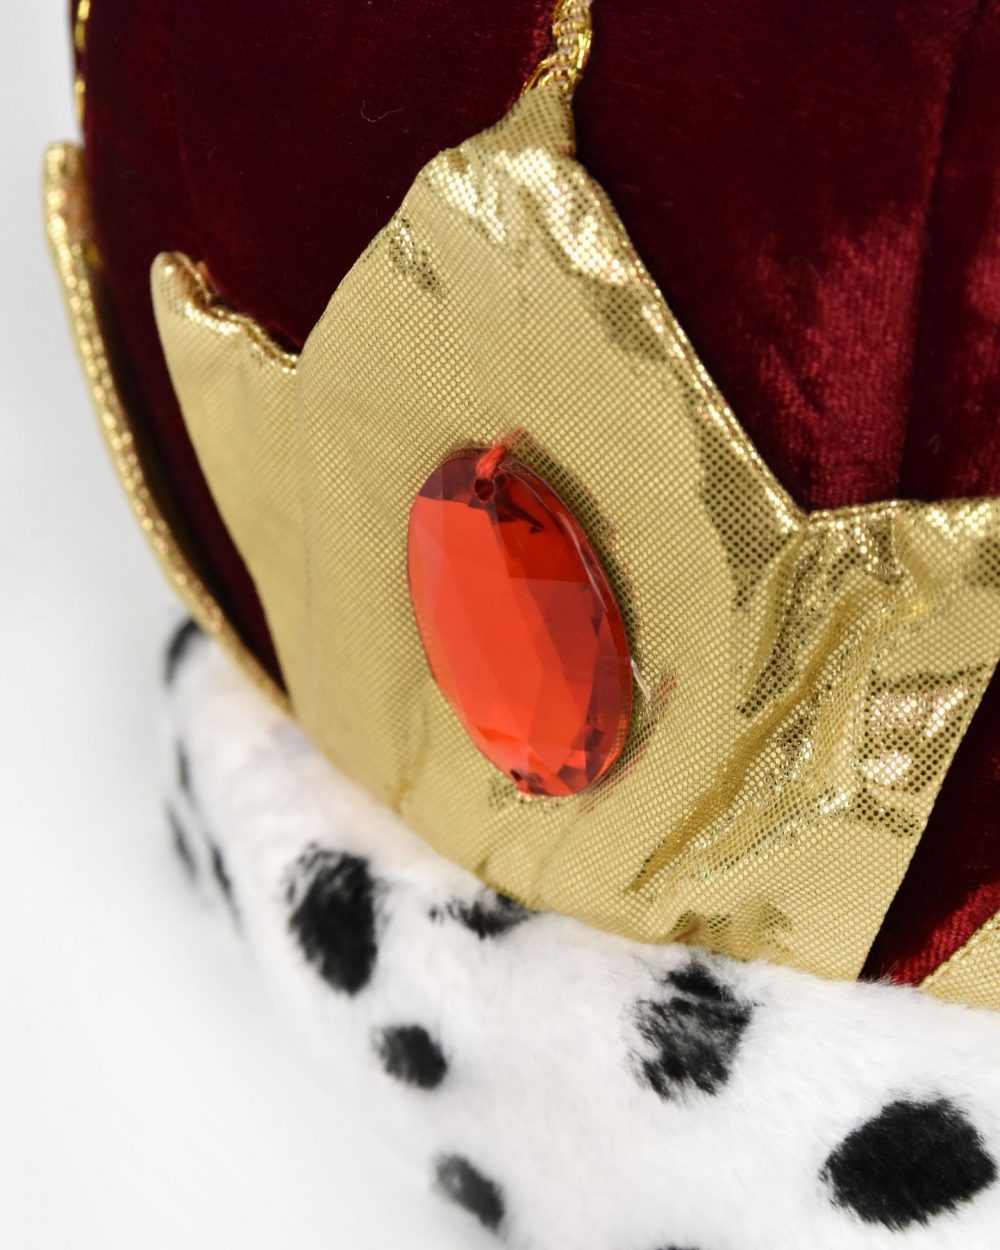 Närbild på framsidan av kungakrona. Kungakronan är sydd i röd sammet och har en svartvit kant i fuskpäls, guldiga detaljer samt en röd plexisten fram.